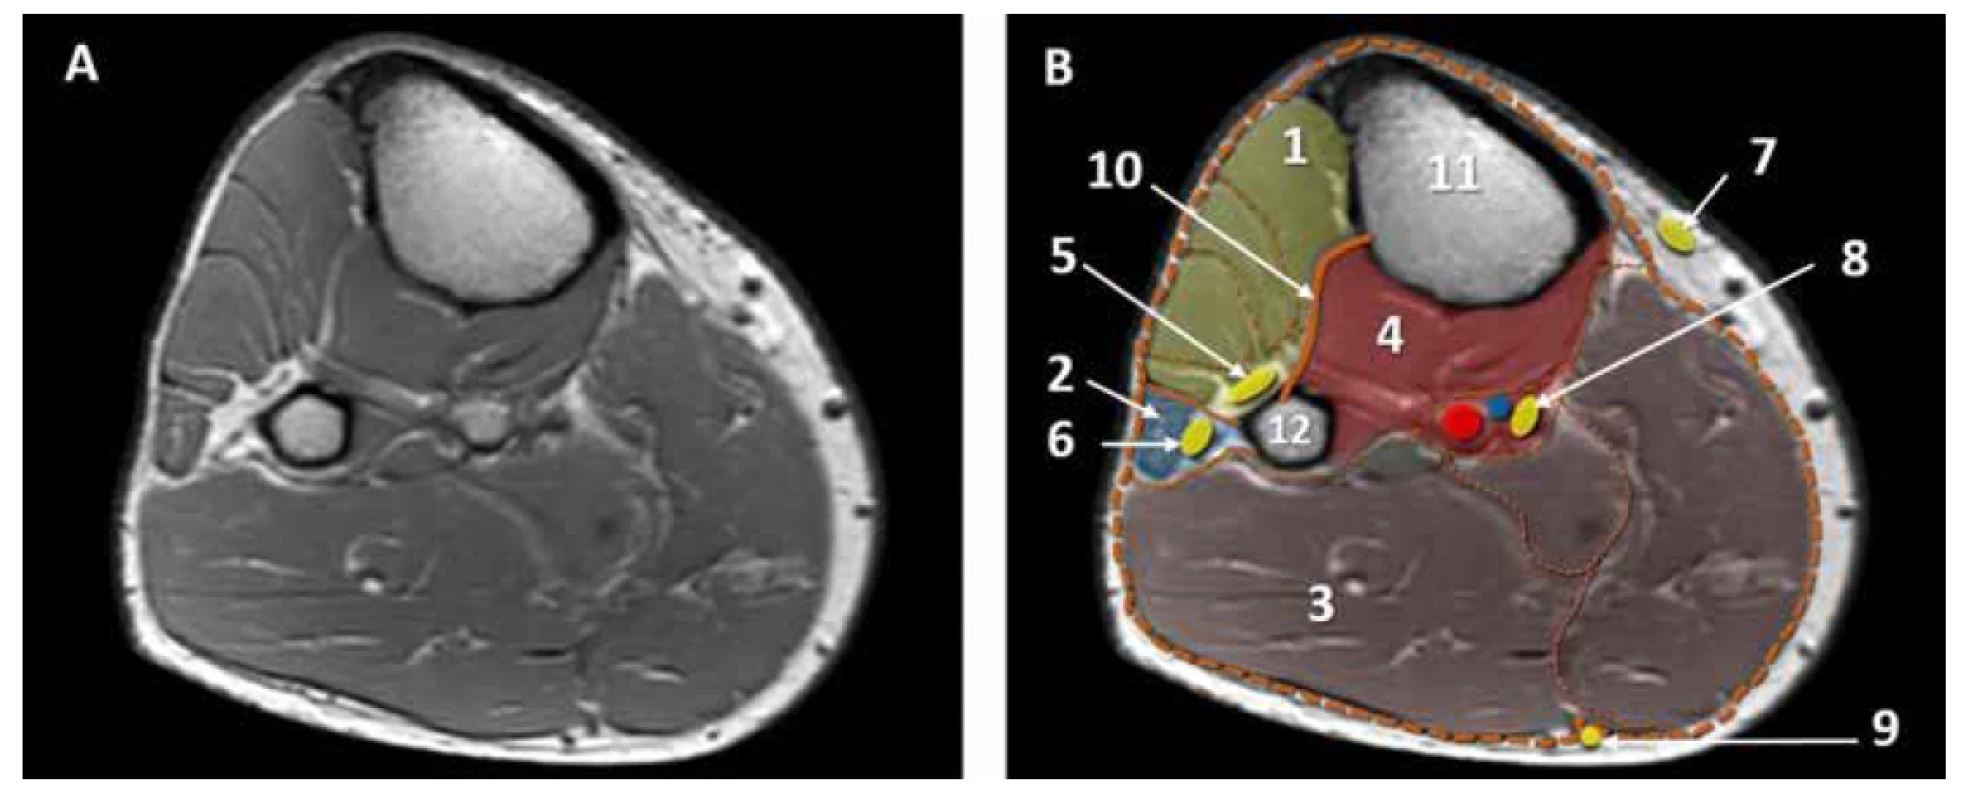 MRI horizontální řez lýtkem, lýtkové kompartmenty. A. nativní obraz. B. kolorovaný obraz: 1. přední kompartment, 2. laterální kompartment,
3. zadní povrchní kompartment, 4. zadní hluboký kompartment, 5. n. peroneus profundus, 6. n. peroneus superficialis, 7. n. saphenus, 8. n. tibialis. 9. n. suralis,
10. membrana interossea, 11. tibie, 12. fibula